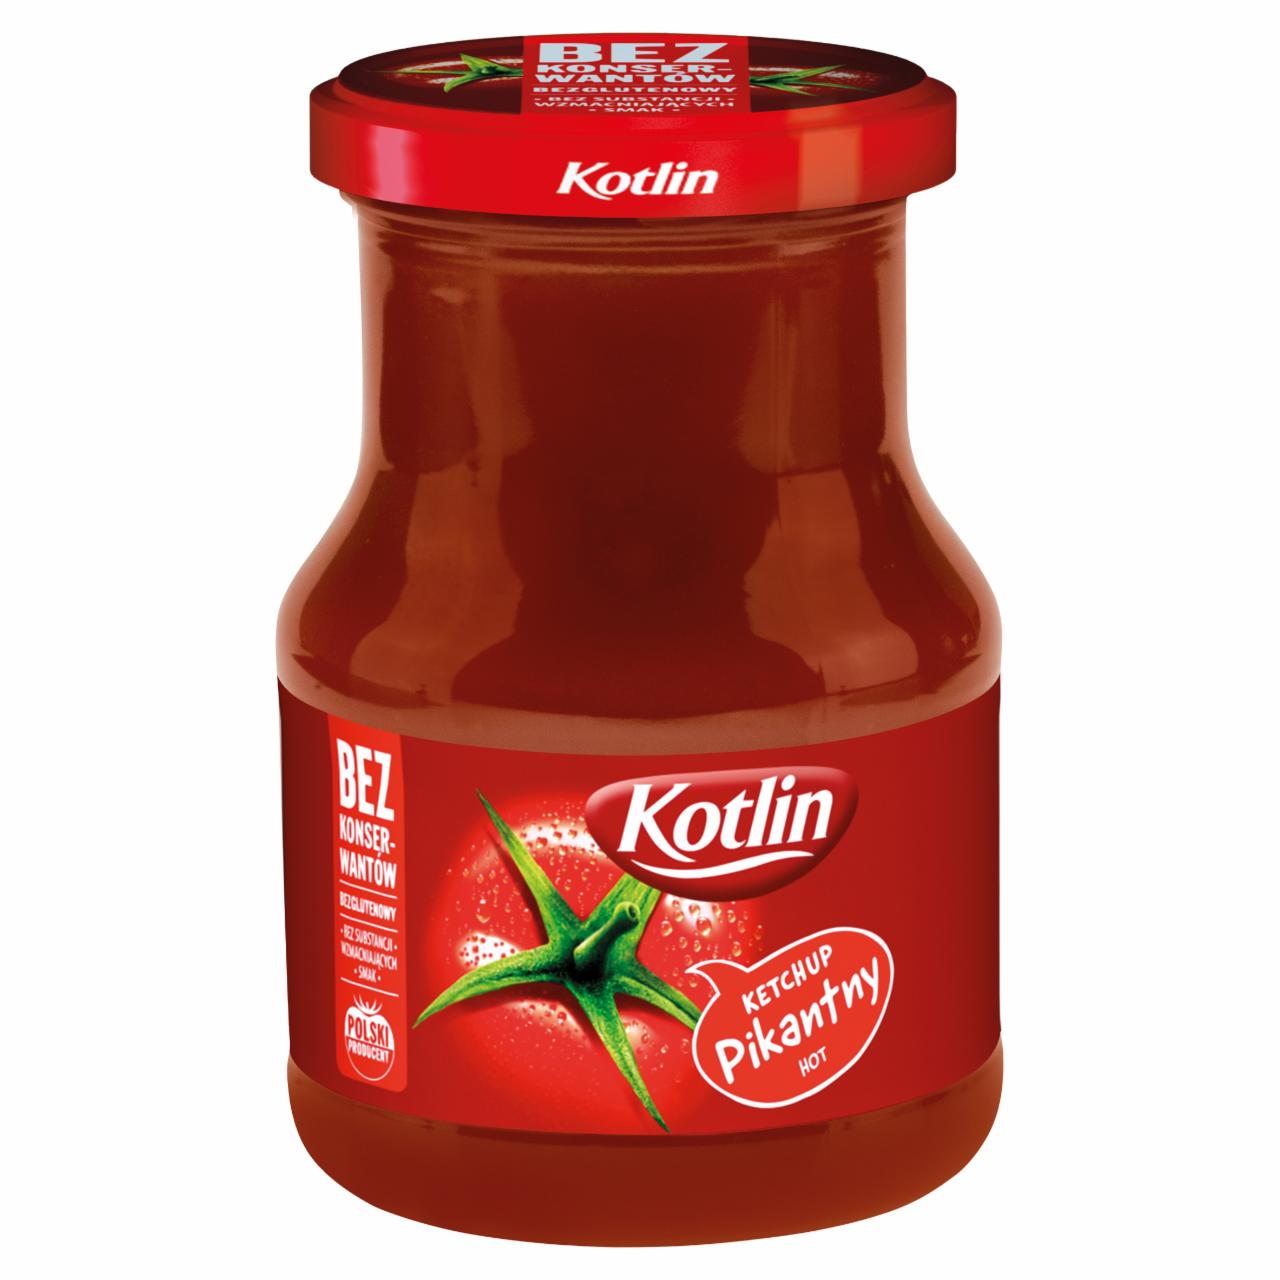 Zdjęcia - Kotlin Ketchup pikantny 380 g